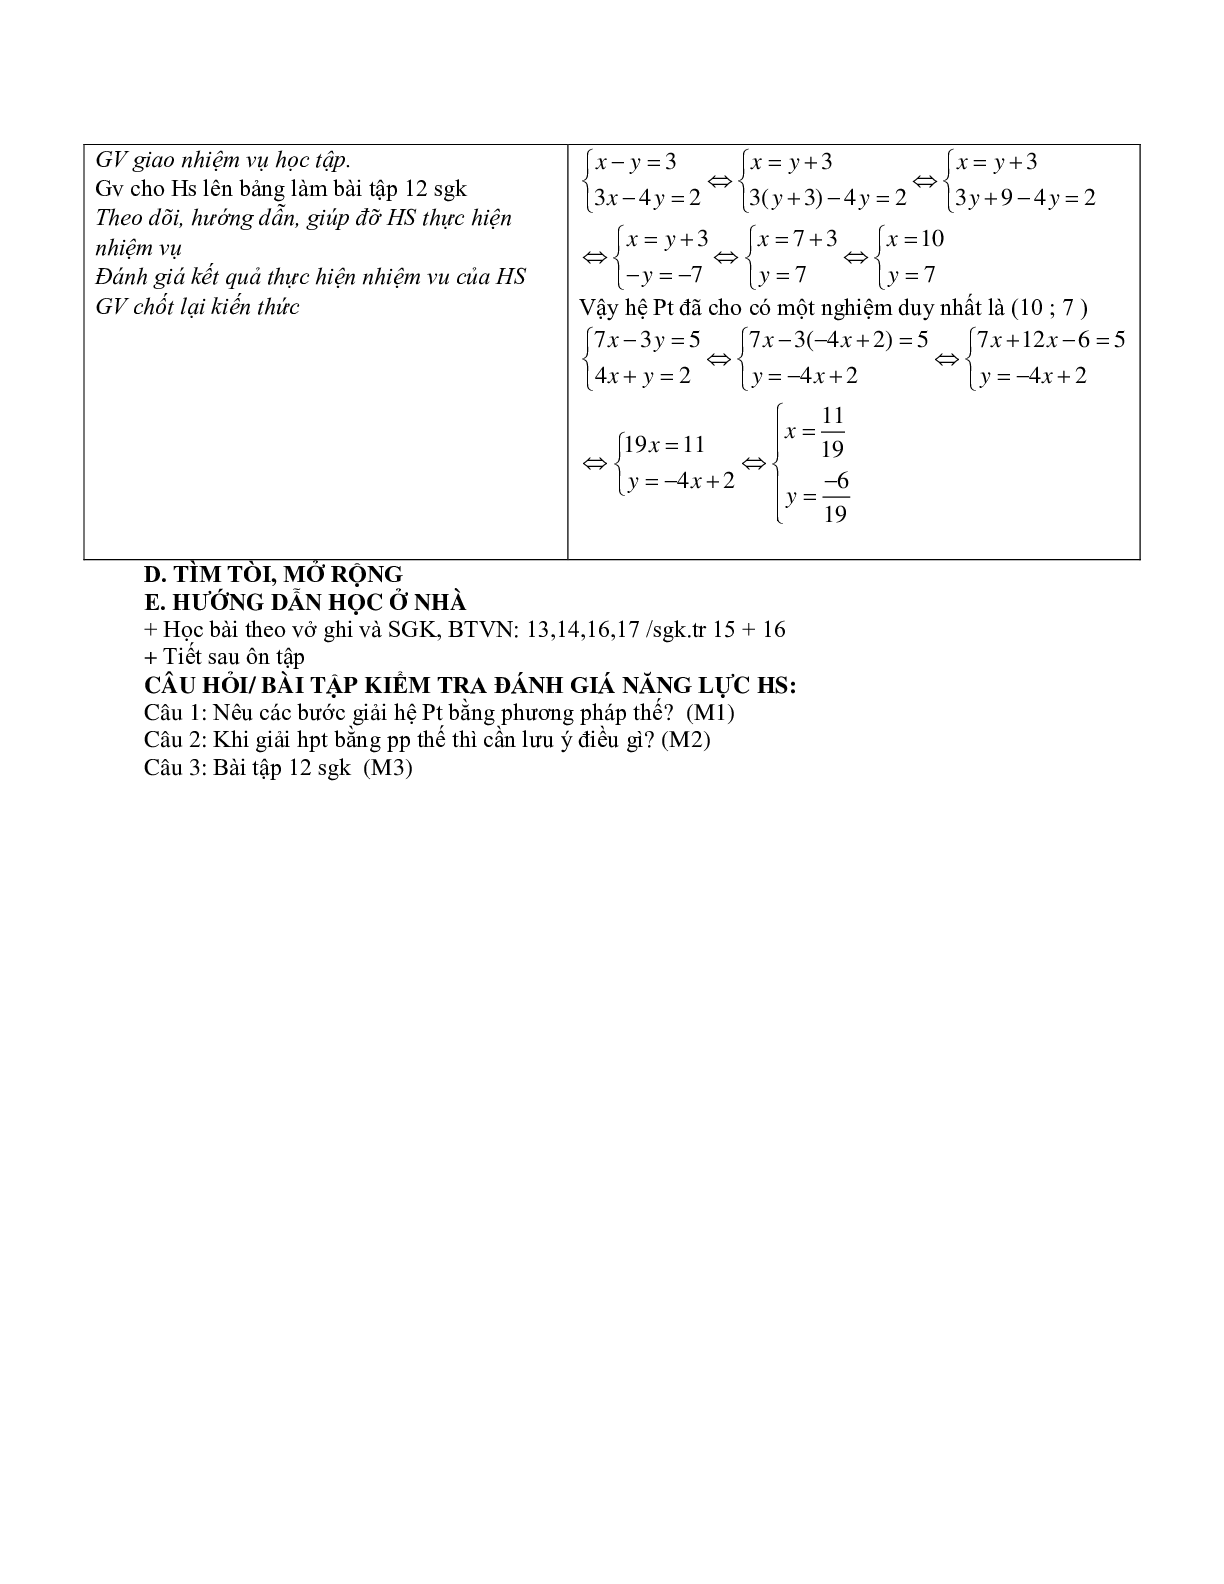 Giáo án Đại số 9 chương 3 bài 3: Giải hệ phương trình bằng phương pháp thế mới nhất (trang 4)